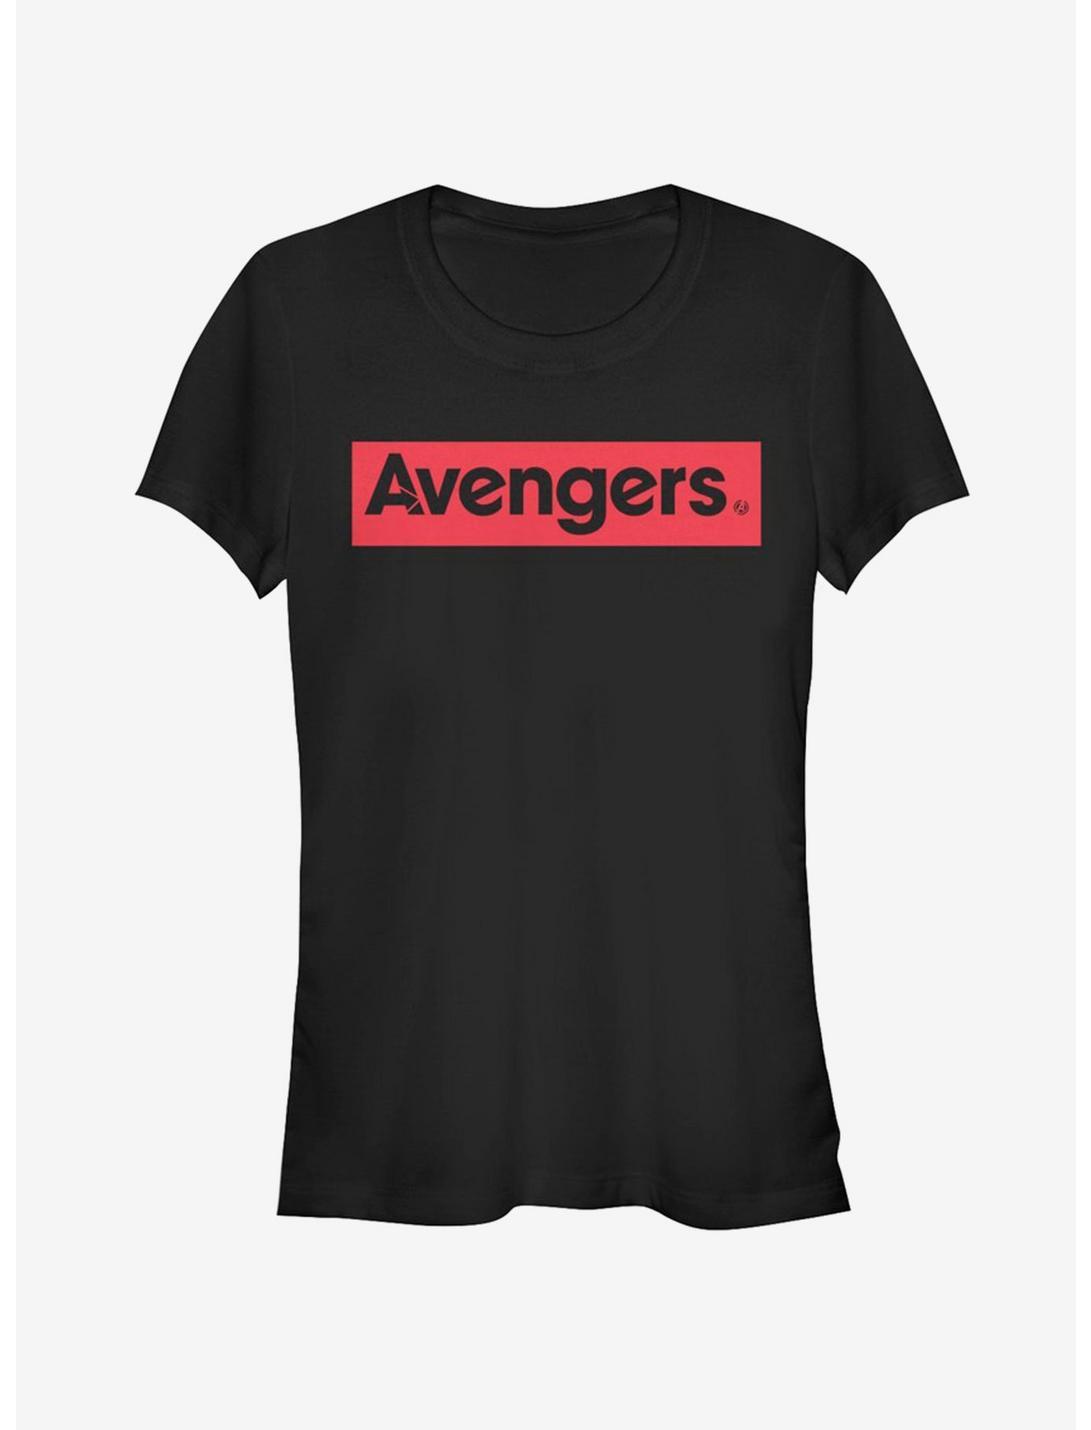 Marvel Avengers Endgame Avengers Girls T-Shirt, BLACK, hi-res